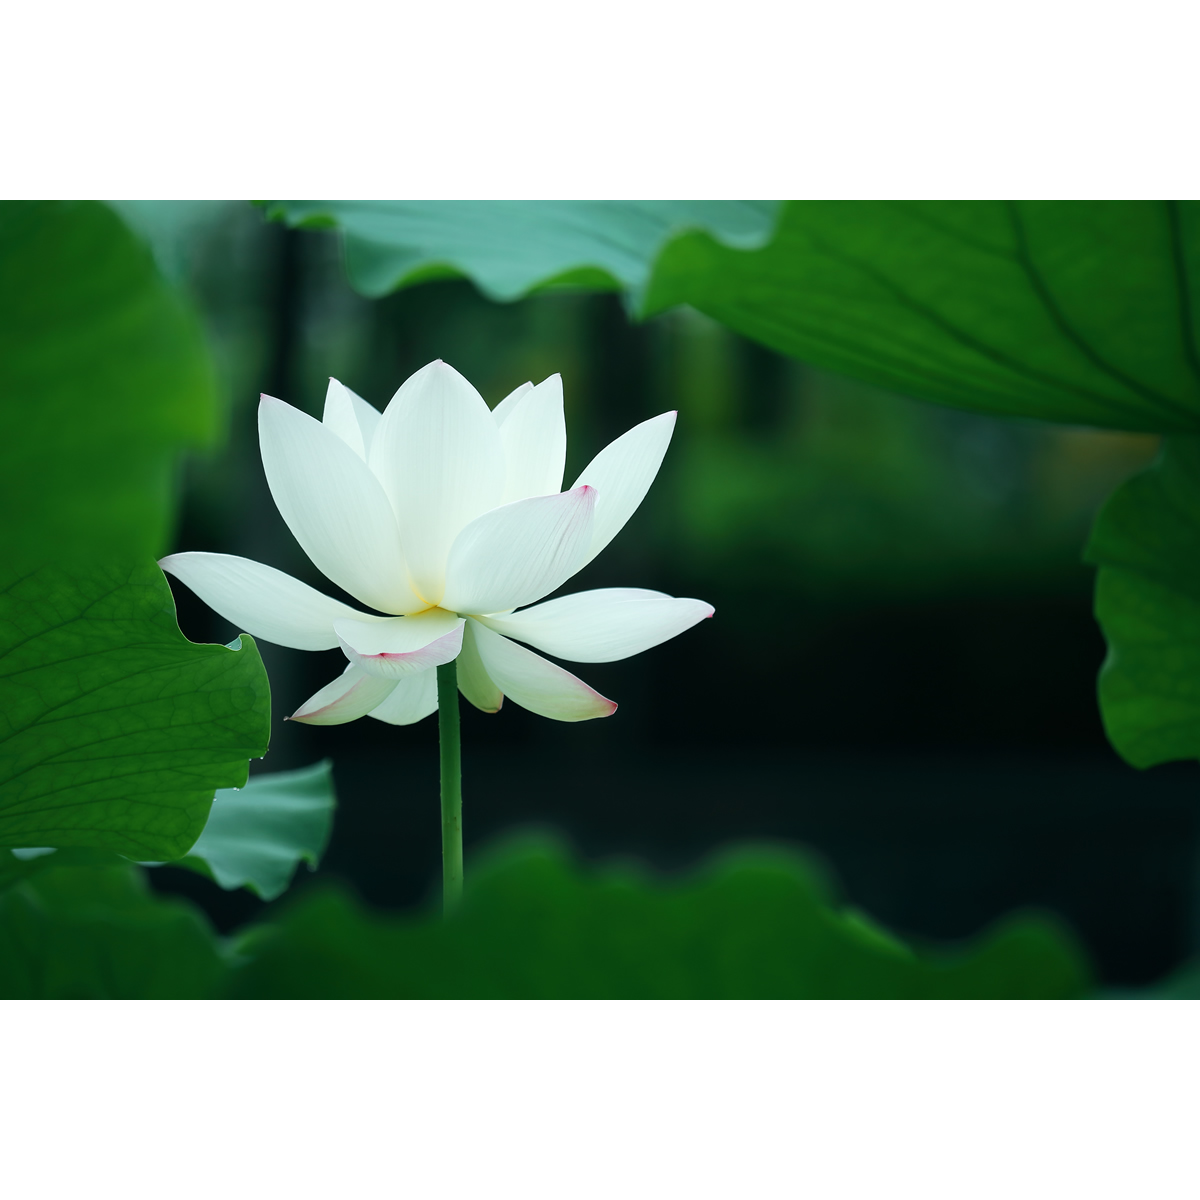 原创花卉摄影作品-白色荷花、莲花/出水芙蓉(1张) 高分辨率原图片